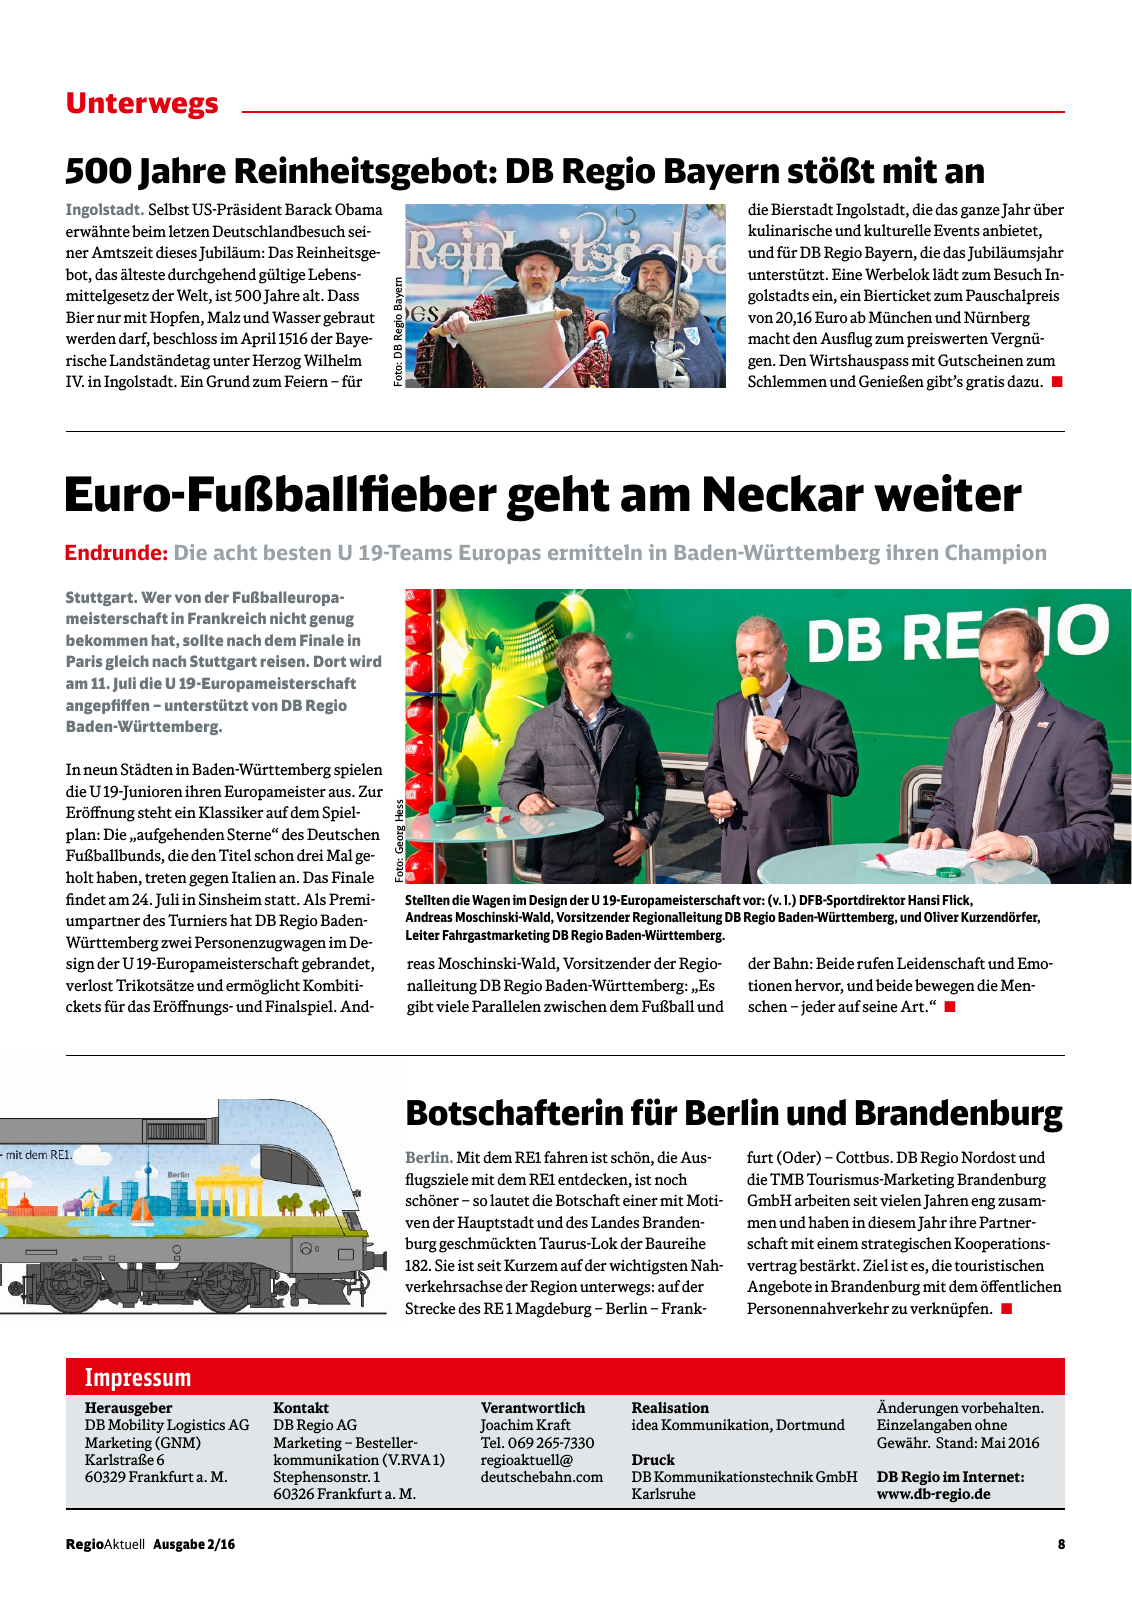 Vorschau RegioAktuell 2/2016 #01 Seite 8